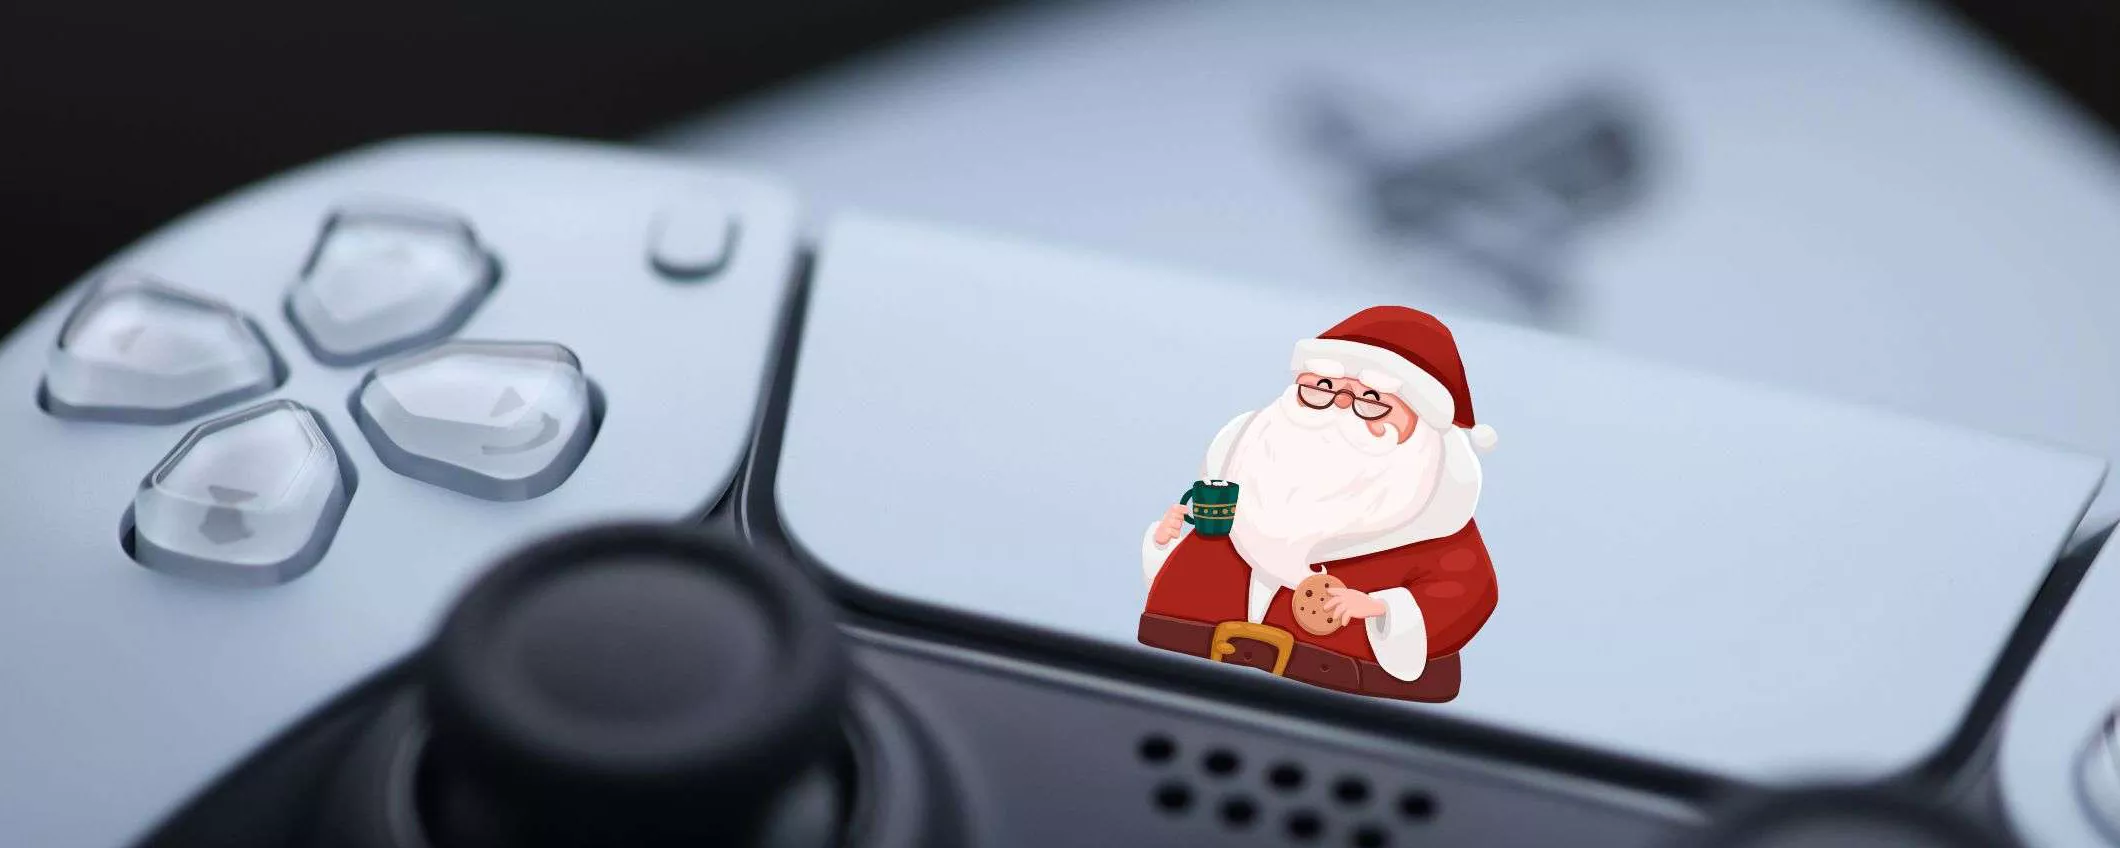 Giochi PS4 e PS5 in offerta su Amazon da regalare a Natale